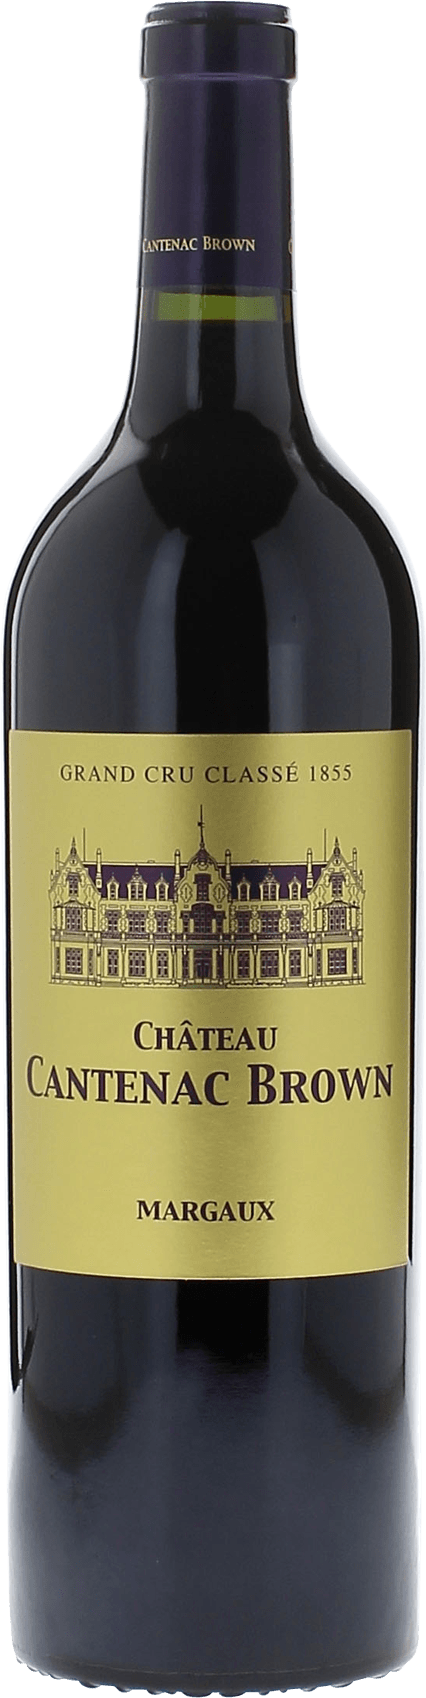 Cantenac brown 1995 2me Grand cru class Margaux, Bordeaux rouge